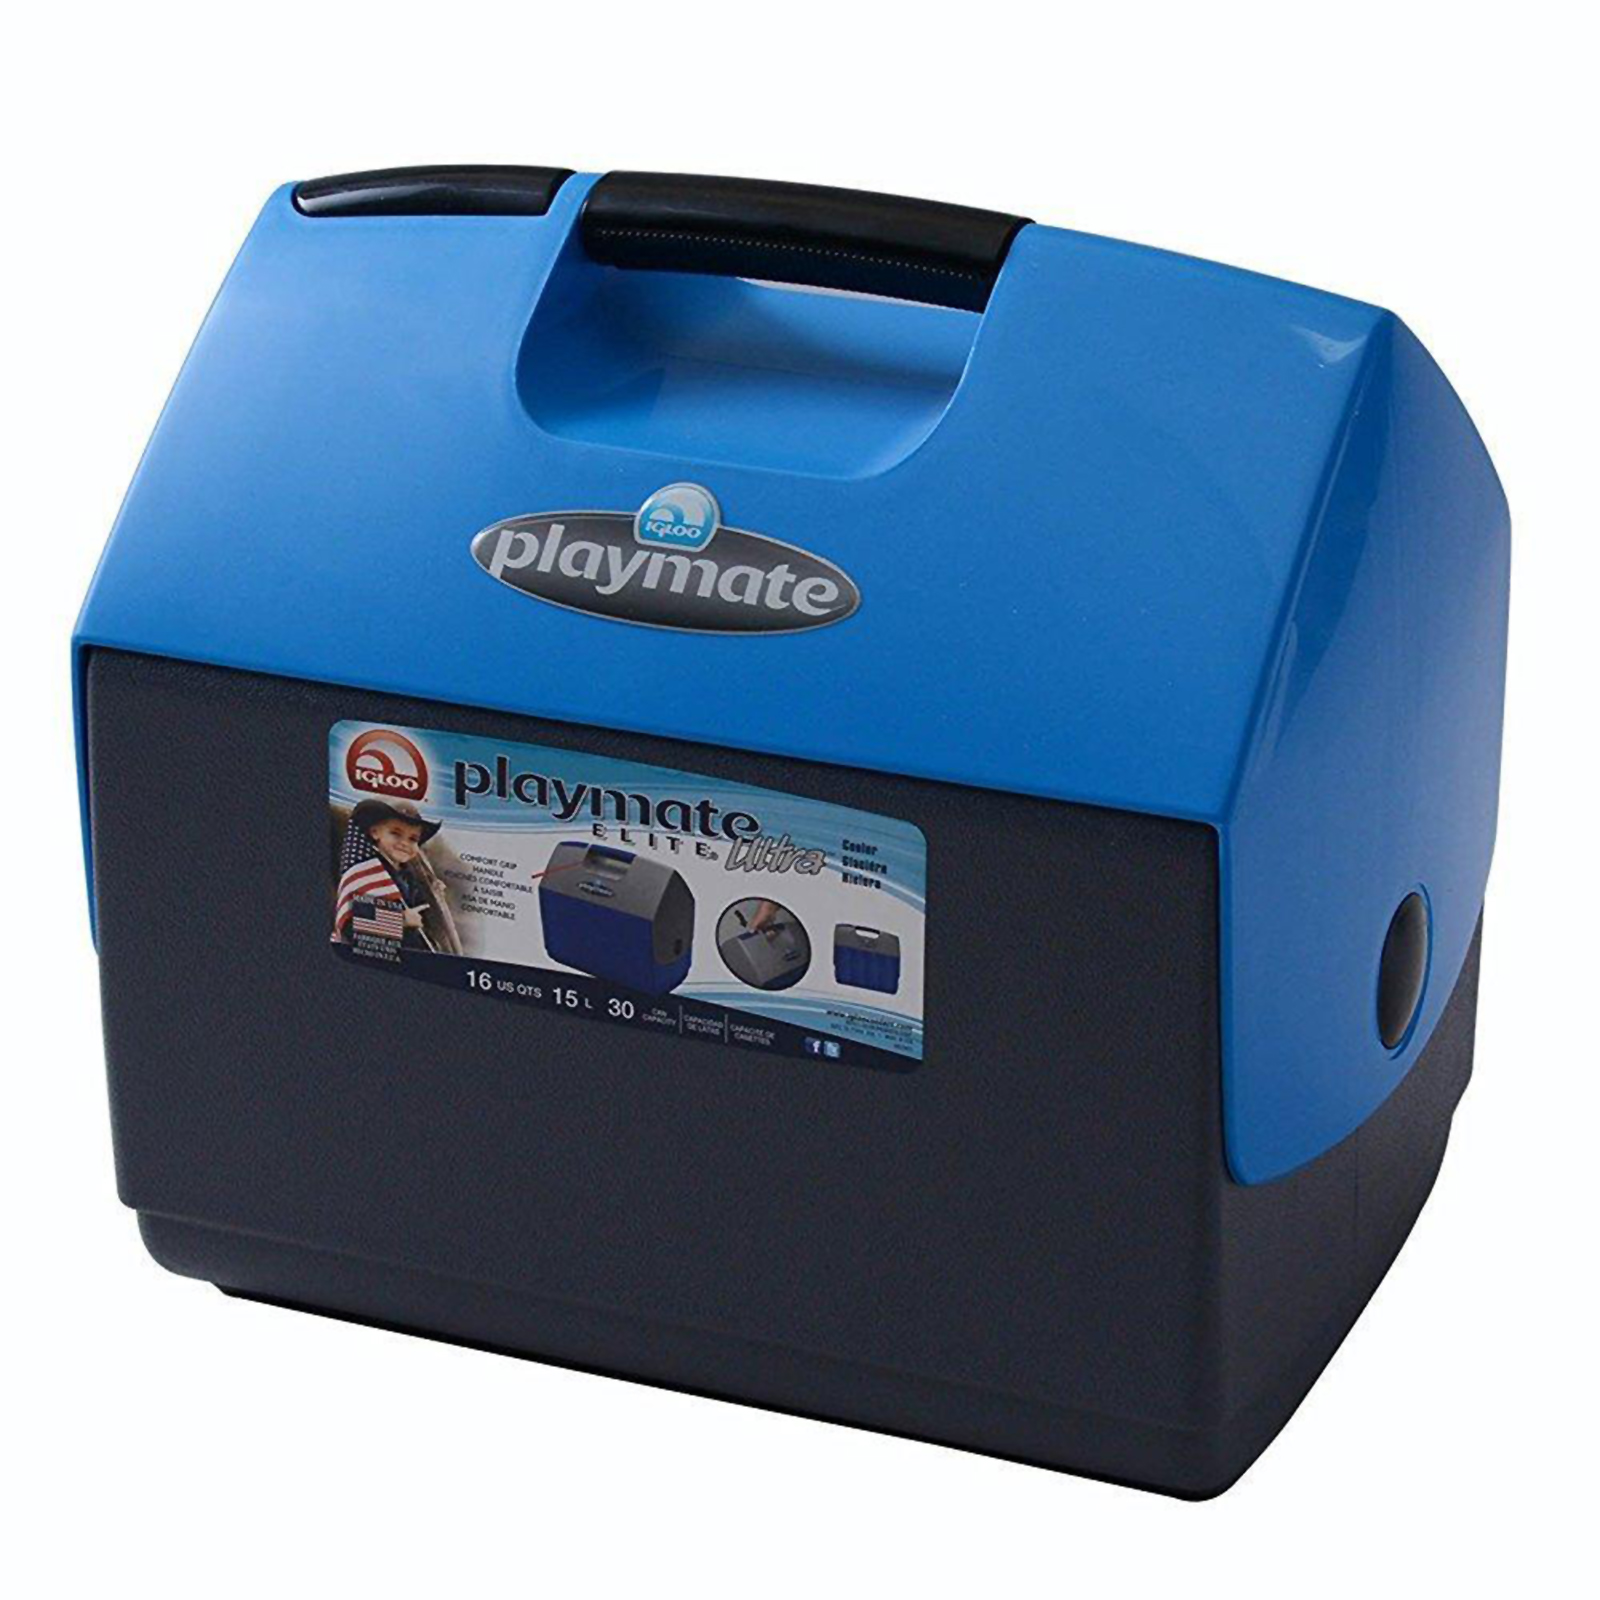 Igloo 16qt. Playmate Elite Ultra Cooler - Electric Blue